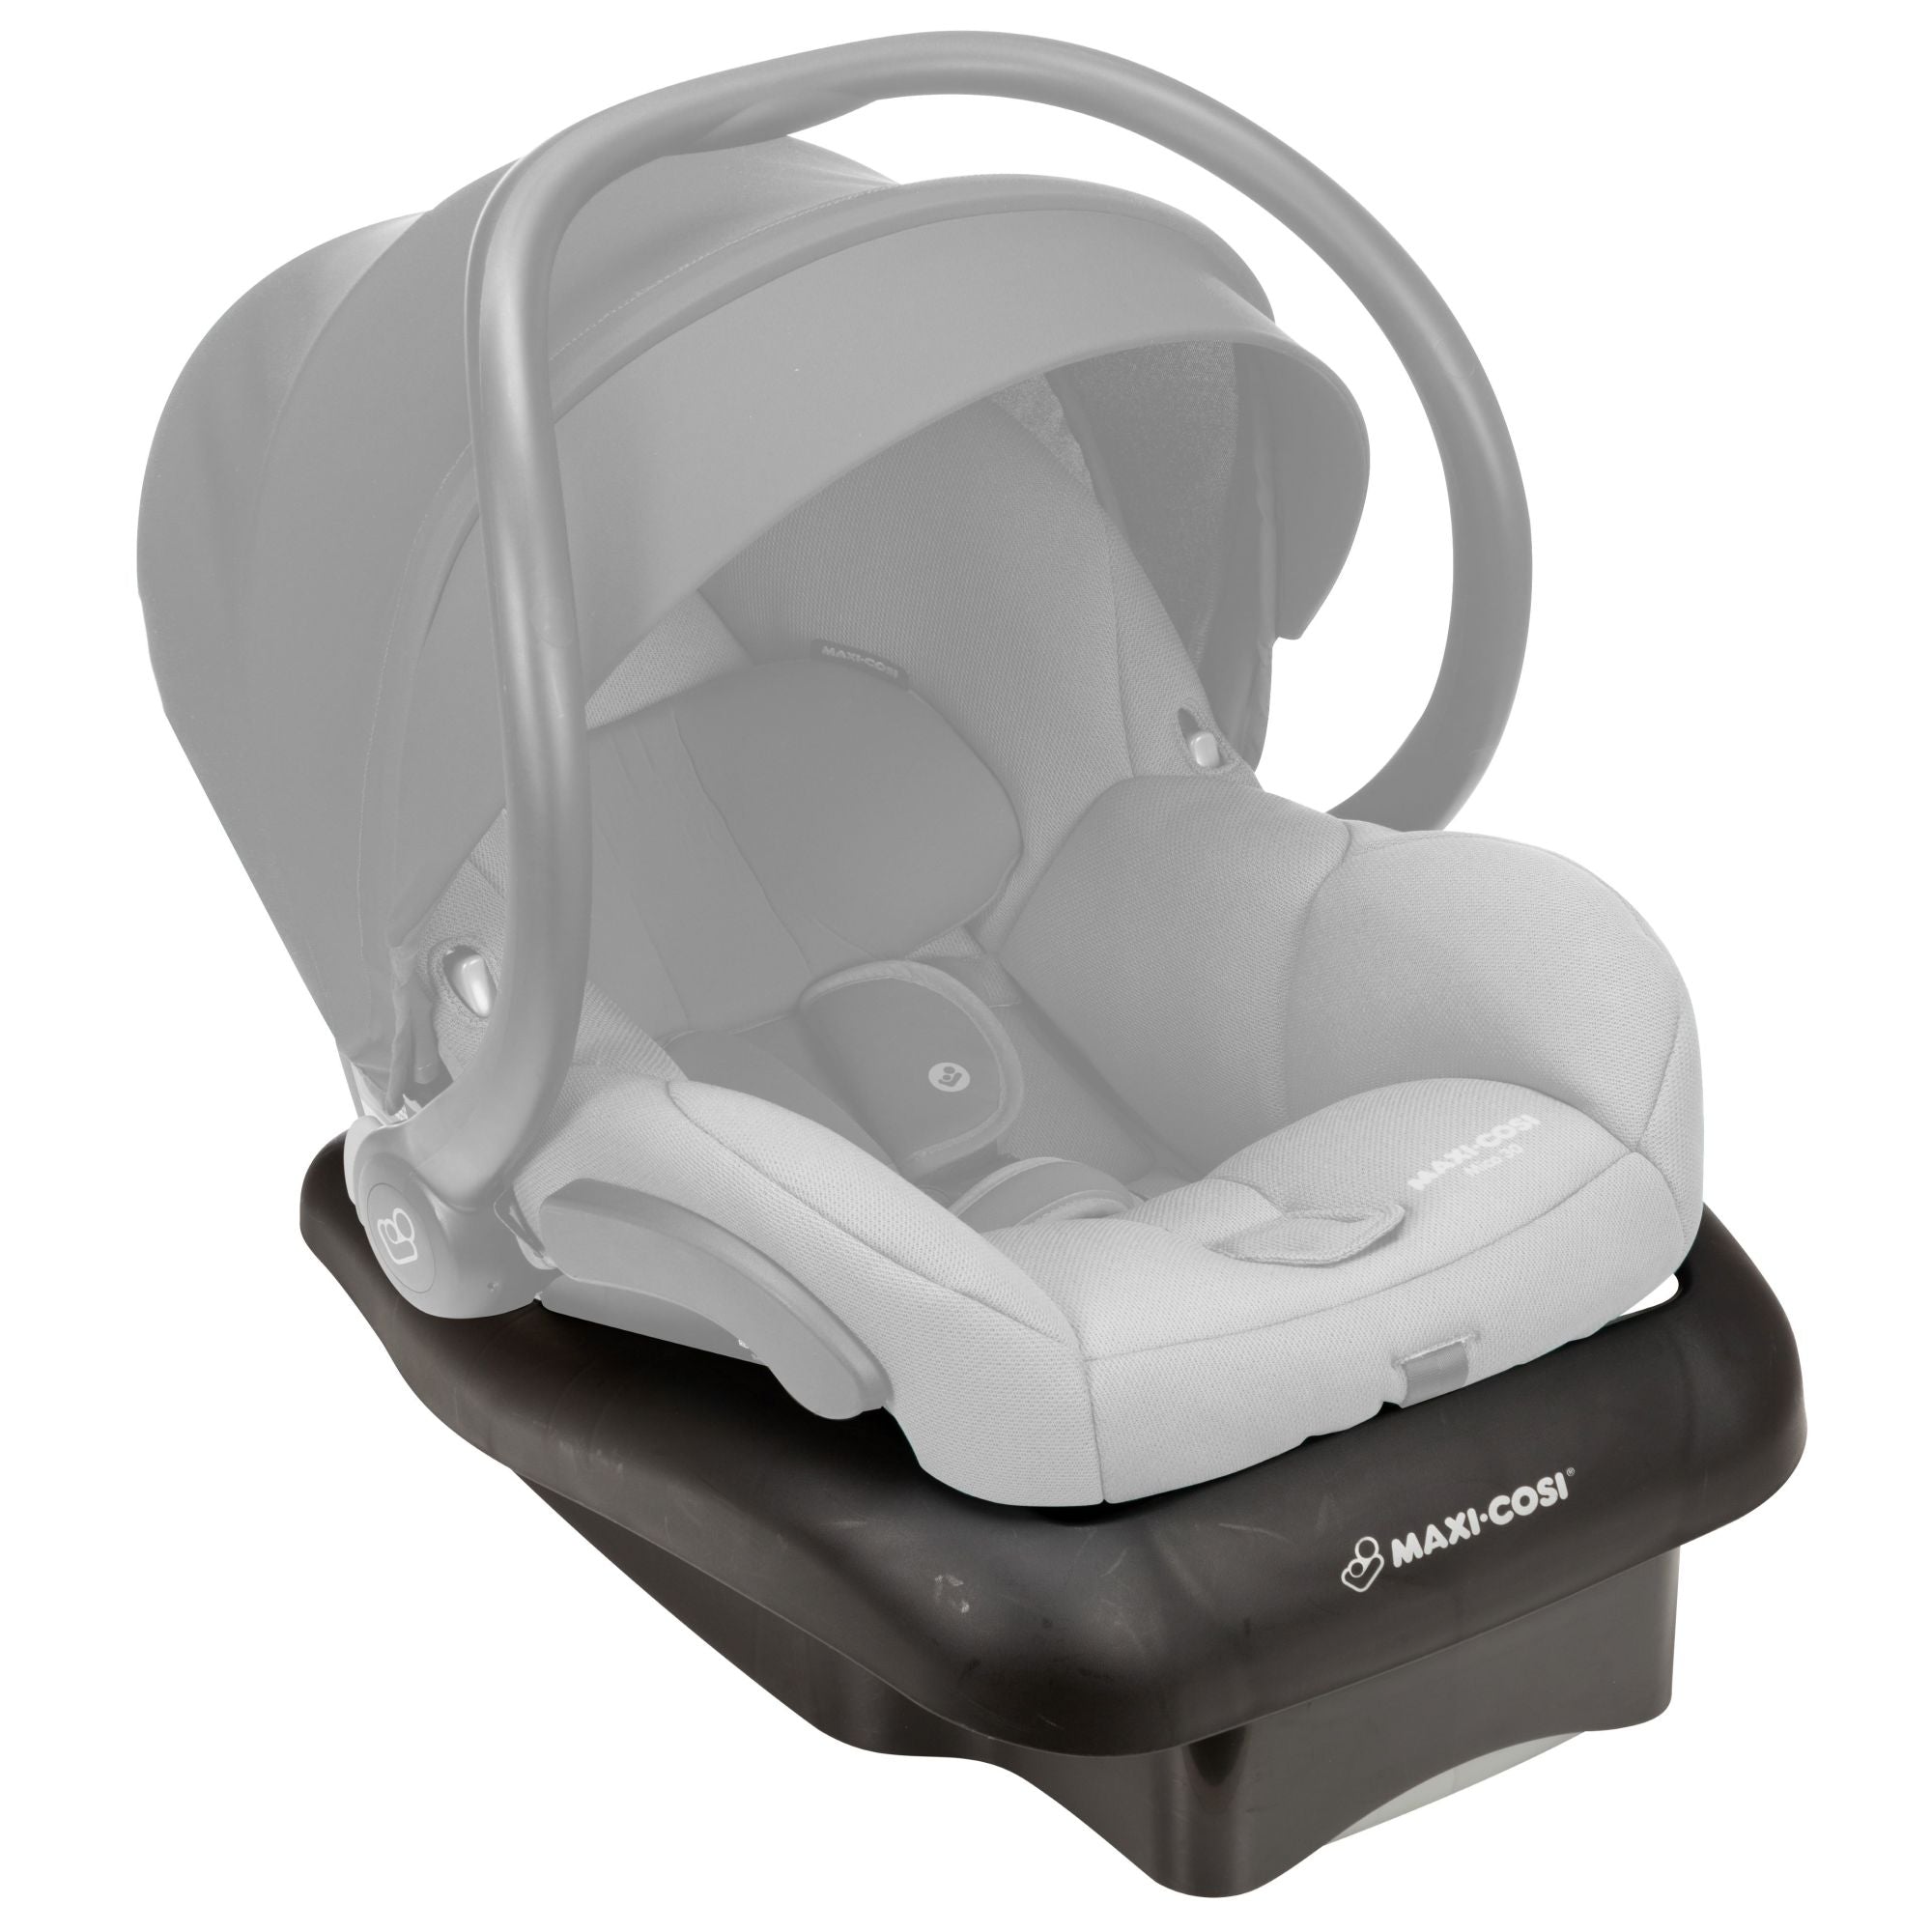 Maxi-Cosi Mico 30 Infant Car Seat Base